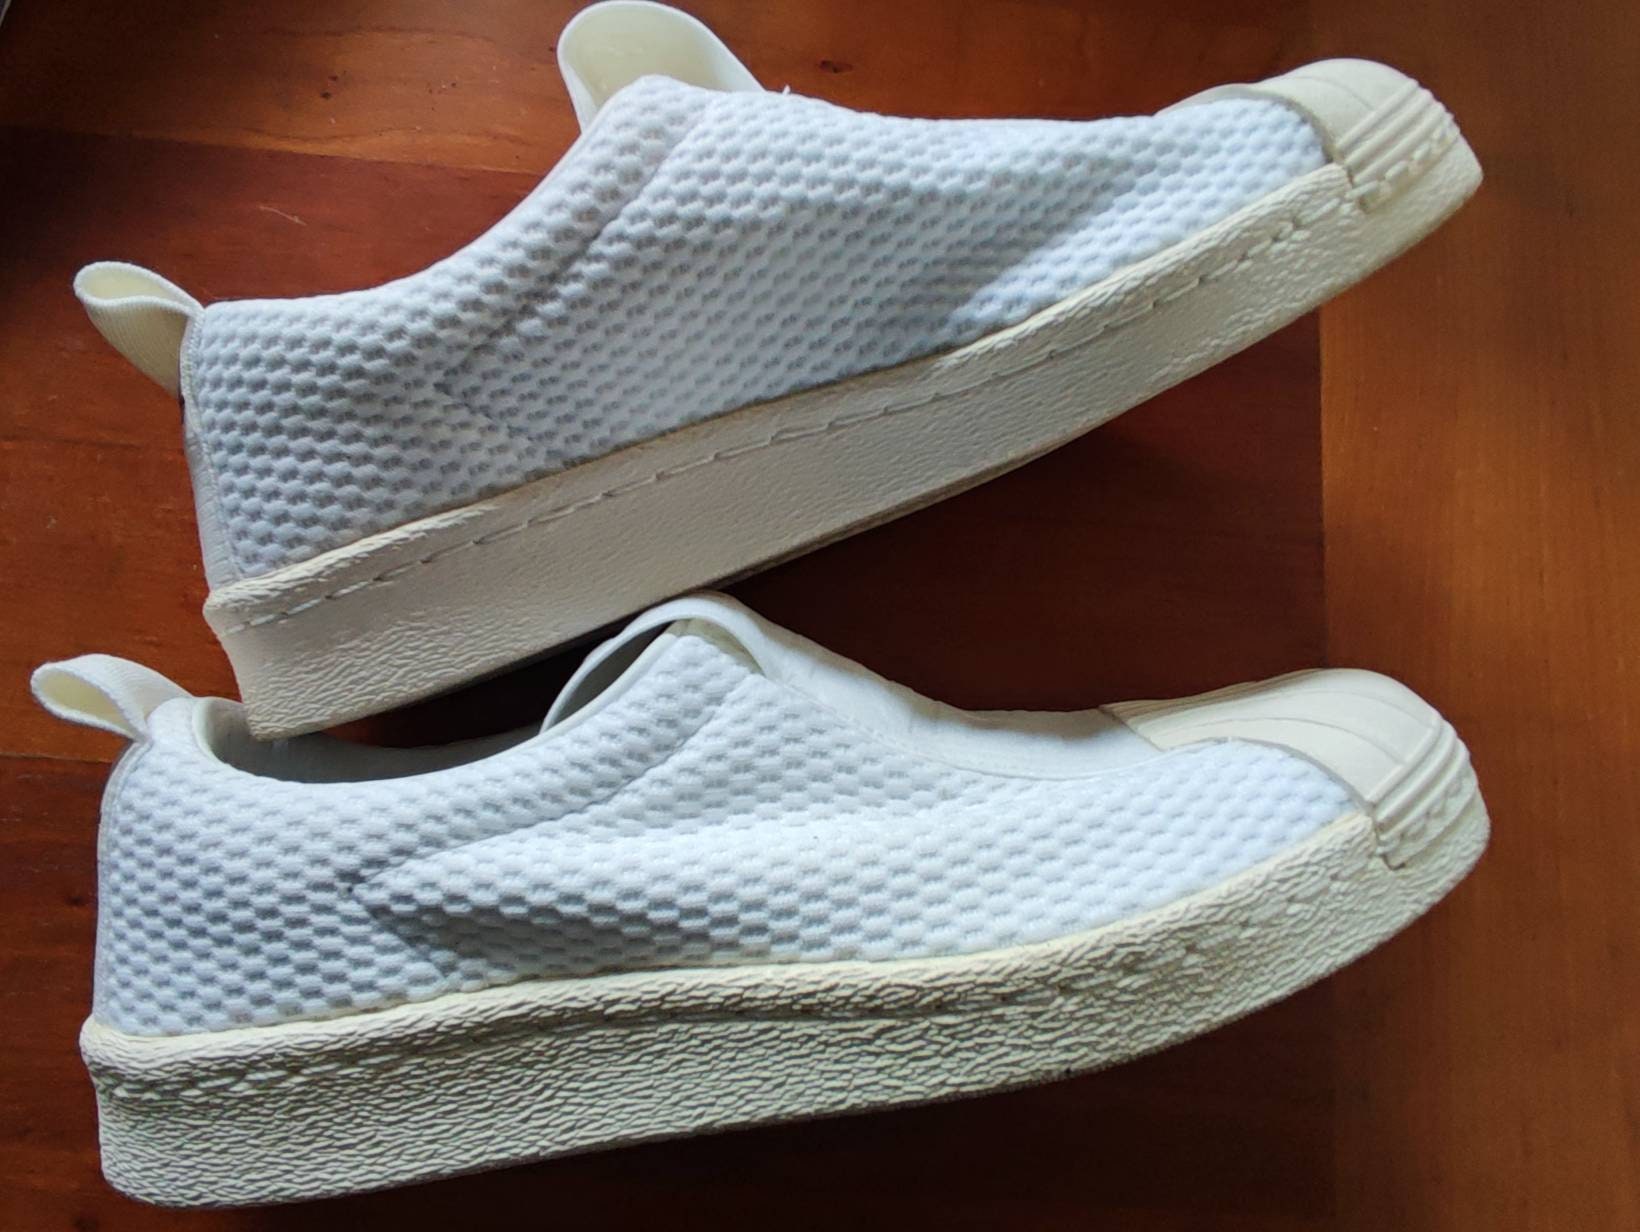 Adidas Laceless Stylish White Size 6 for USA - Etsy